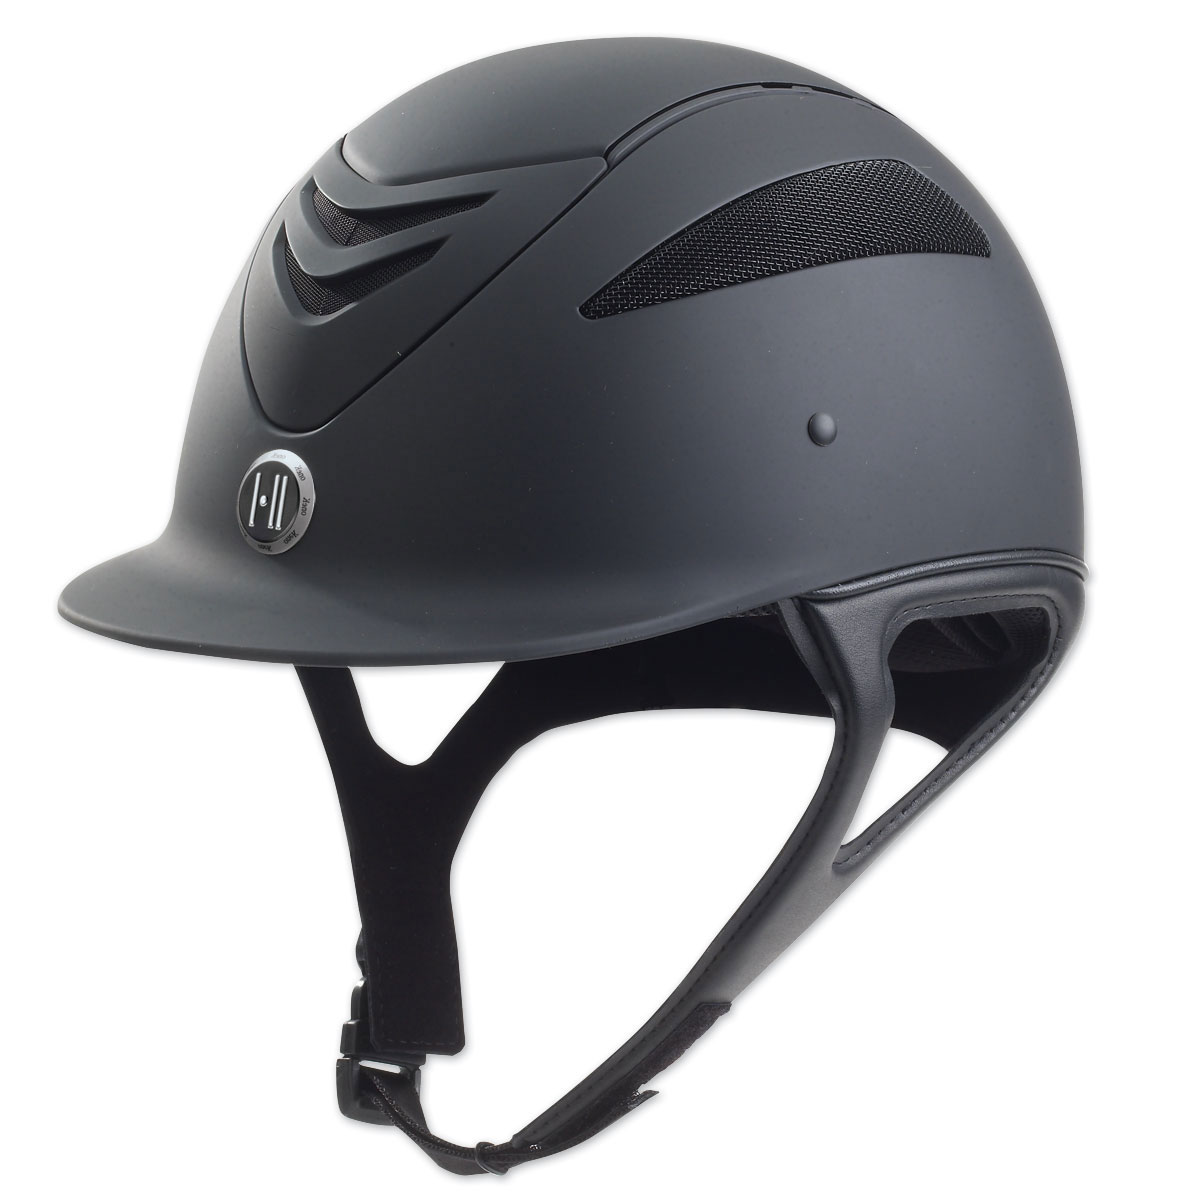 C-LRGL Large Long Oval One K Defender Riding Adjustable Comfort Helmet Brown Mat 